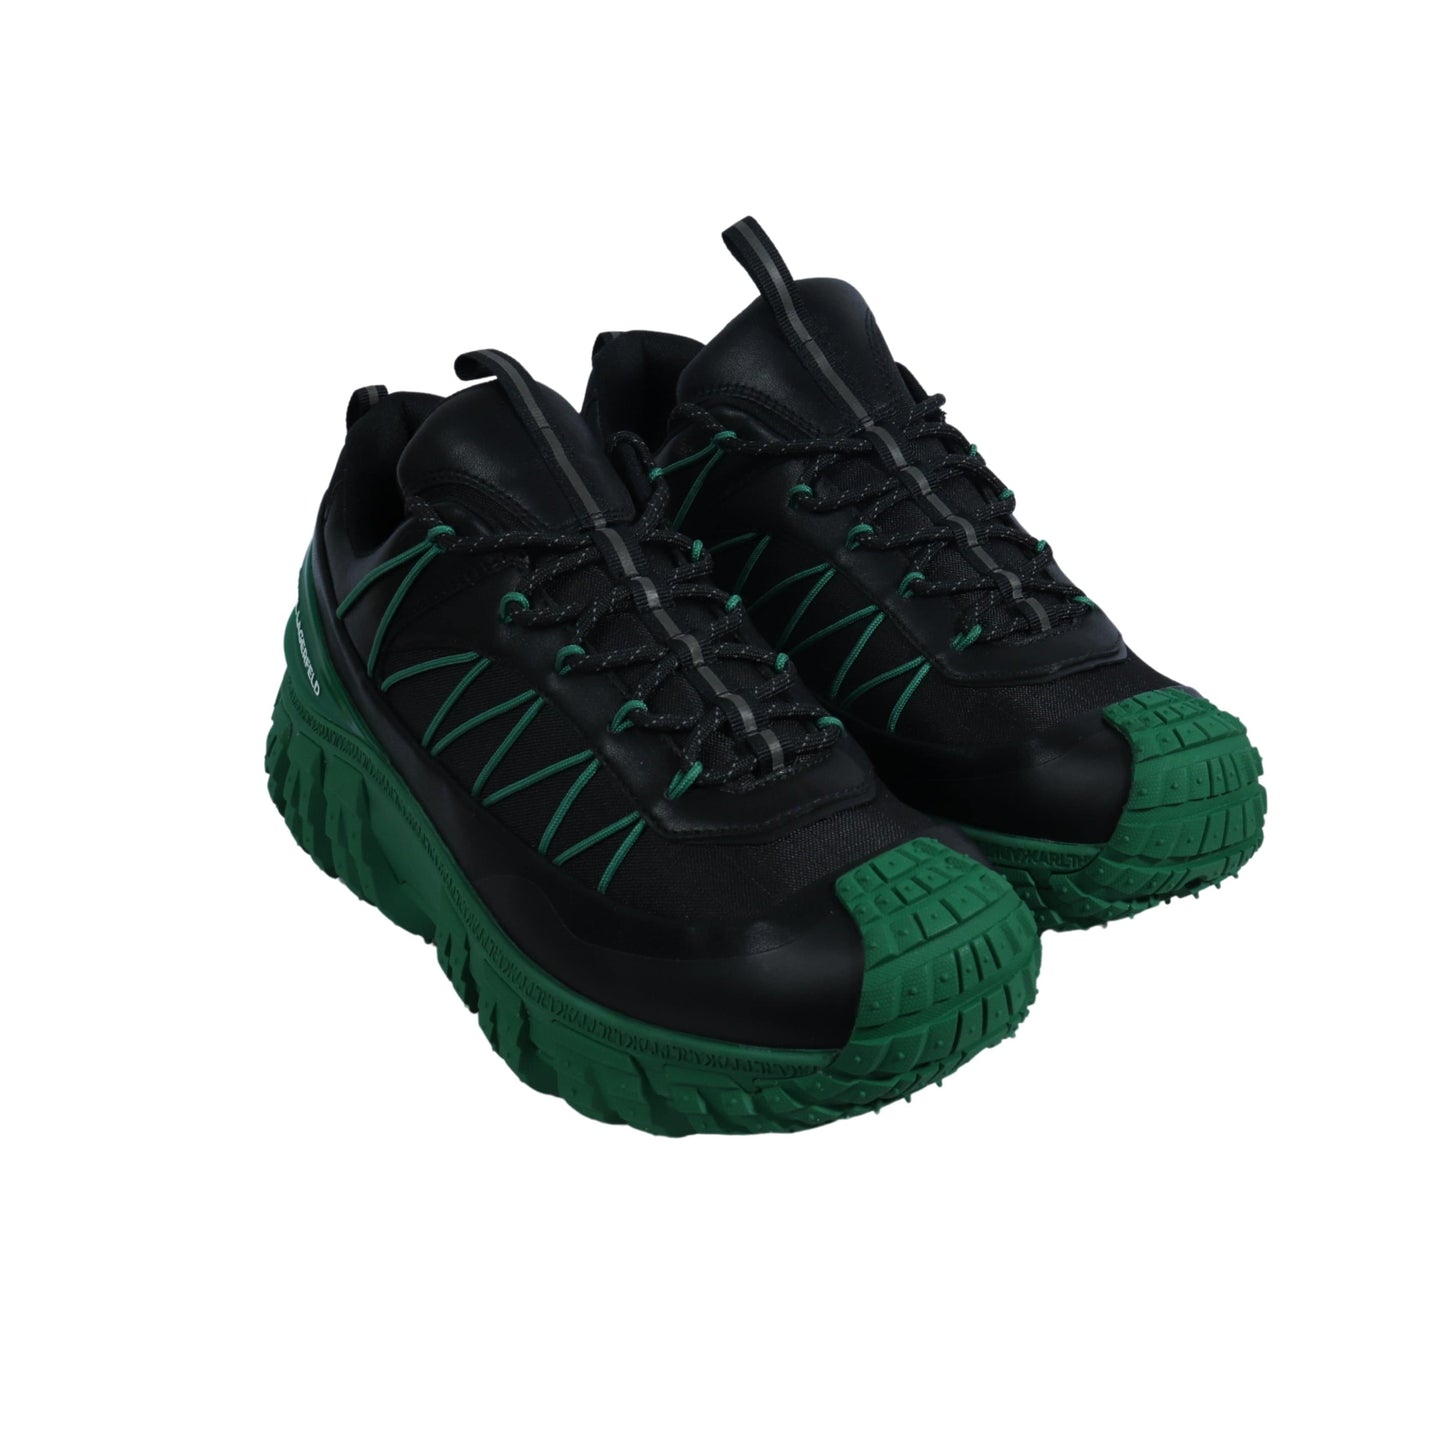 KARL LAGERFELD Mens Shoes 43 / Black KARL LAGERFELD - Chunky Heeled Sneakers